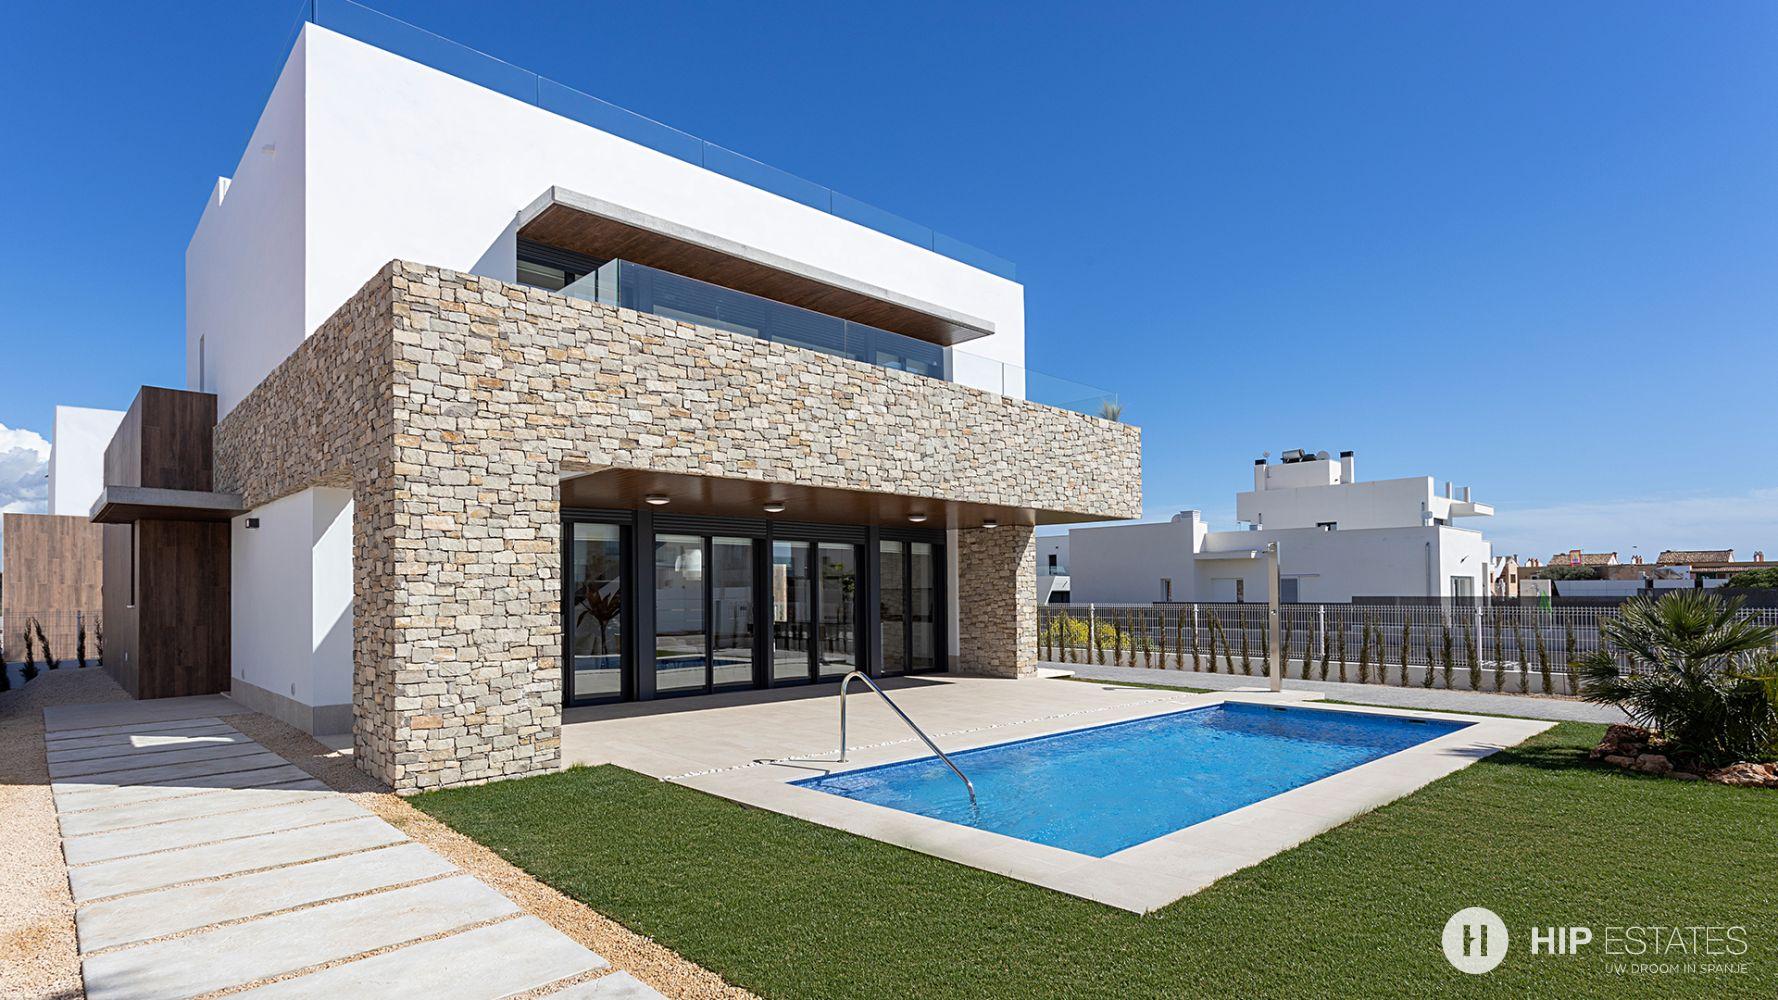 melk wit tand samenzwering Moderne villa's met privé zwembad in Mallorca | HIP Estates | Tweede  verblijf in Spanje, huis kopen, appartement kopen